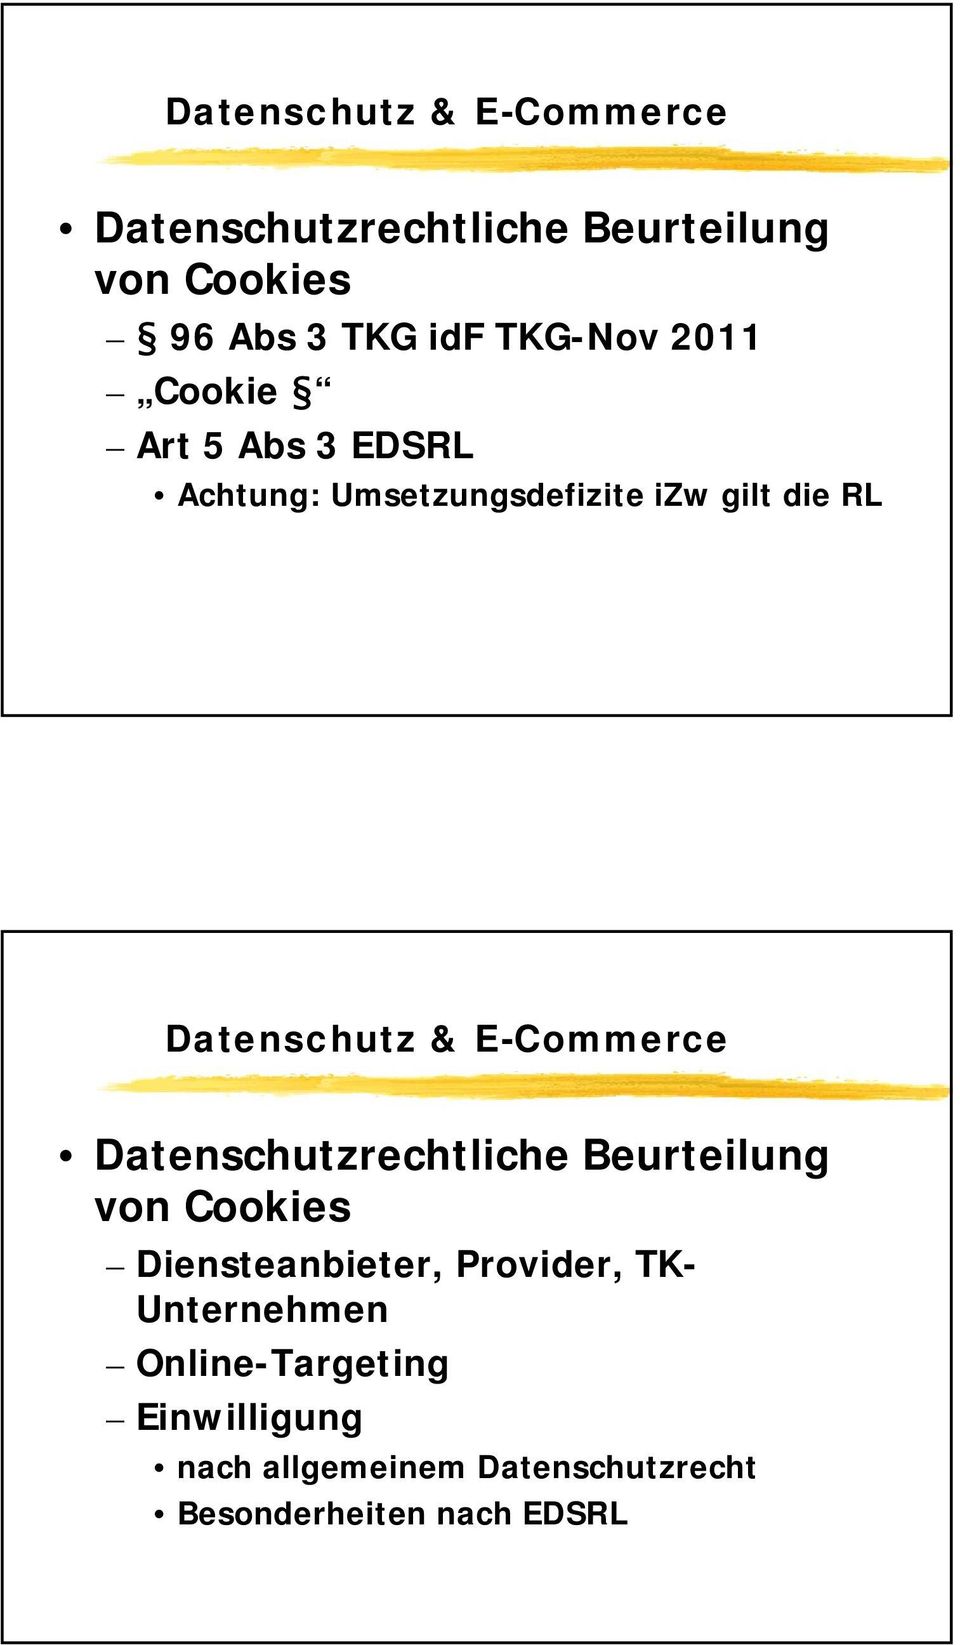 Datenschutzrechtliche Beurteilung von Cookies Diensteanbieter, Provider, TK-